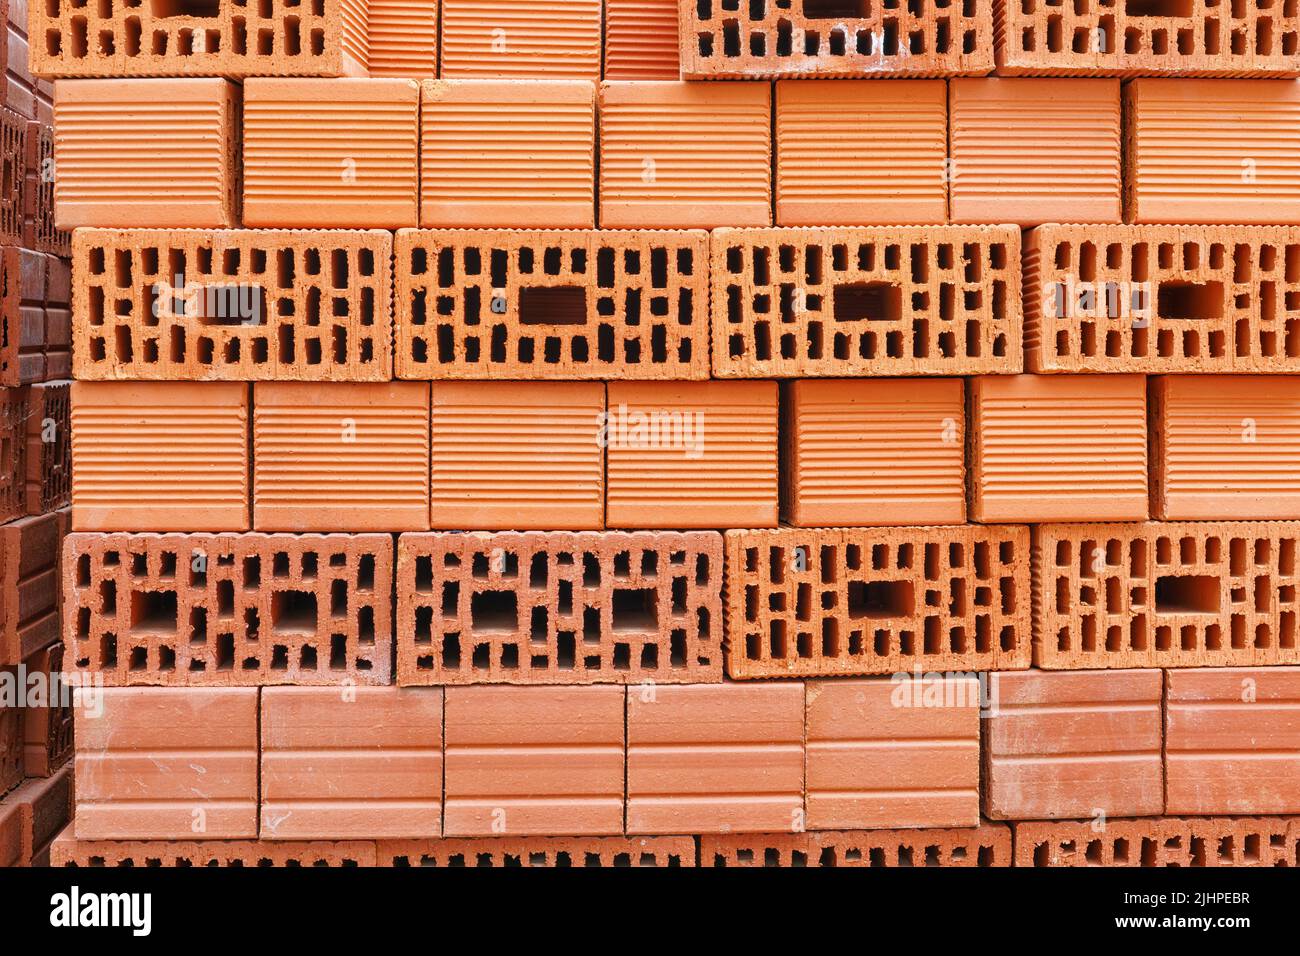 Briques De Céramique Rouge Sur Le Chantier. Keramoblock. Brique Creuse.  Construction D'un Bâtiment En Briques Rouges. Closeup. Mat Image stock -  Image du orange, industriel: 257006949